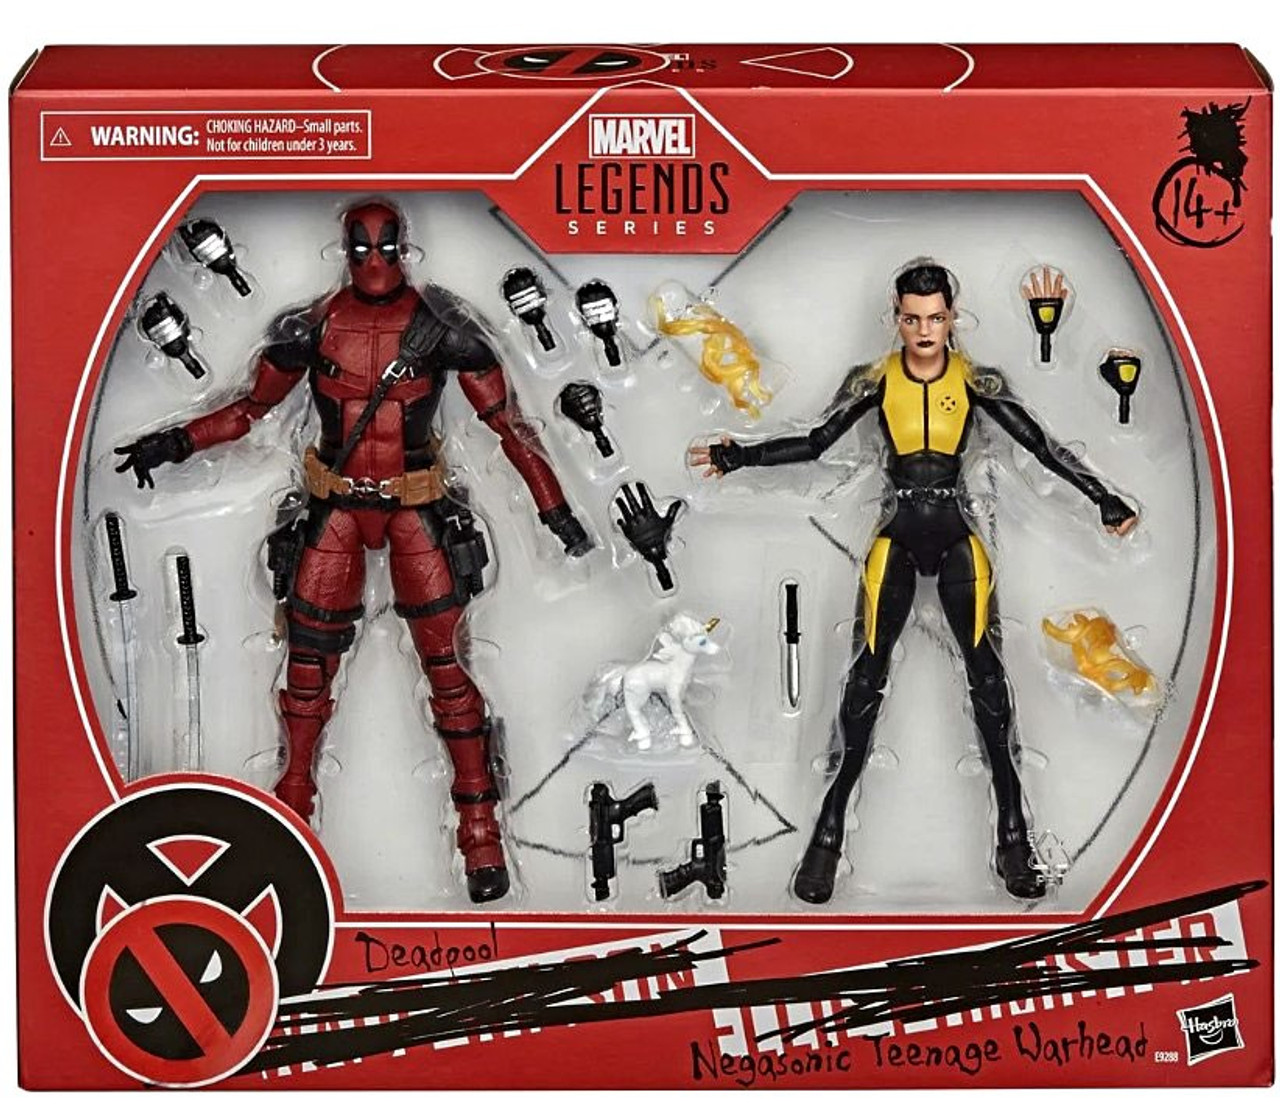 Legends X-men No.002 DEADPOOL Action Figure Toy 16cm New 